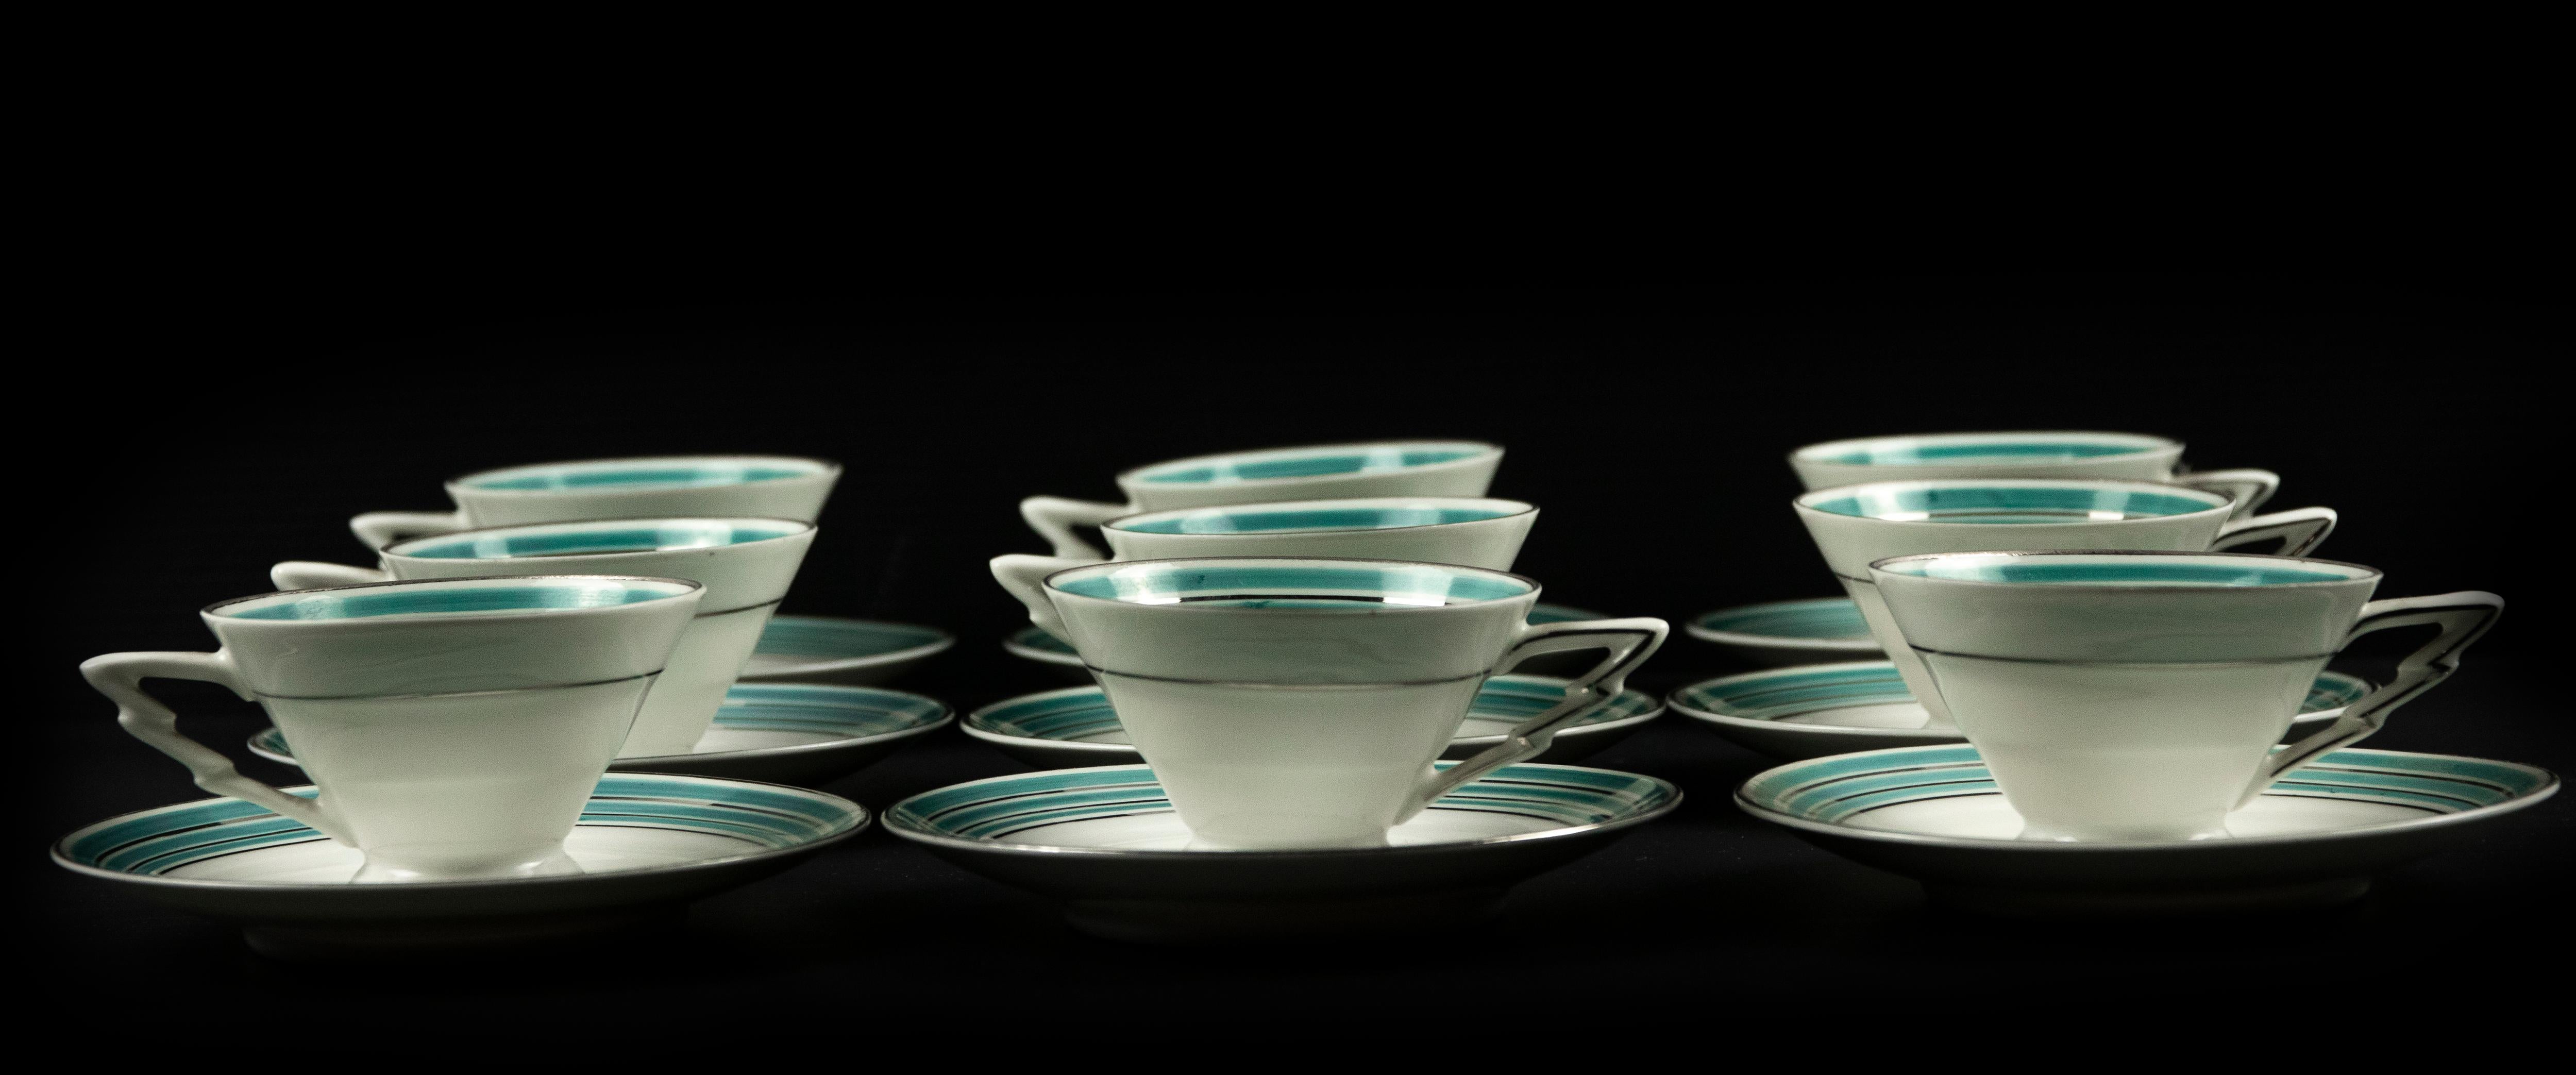 Le service à café est un objet décoratif réalisé au milieu du 20ème siècle.

Service en porcelaine composé de 9 tasses et 9 assiettes finement décorées.